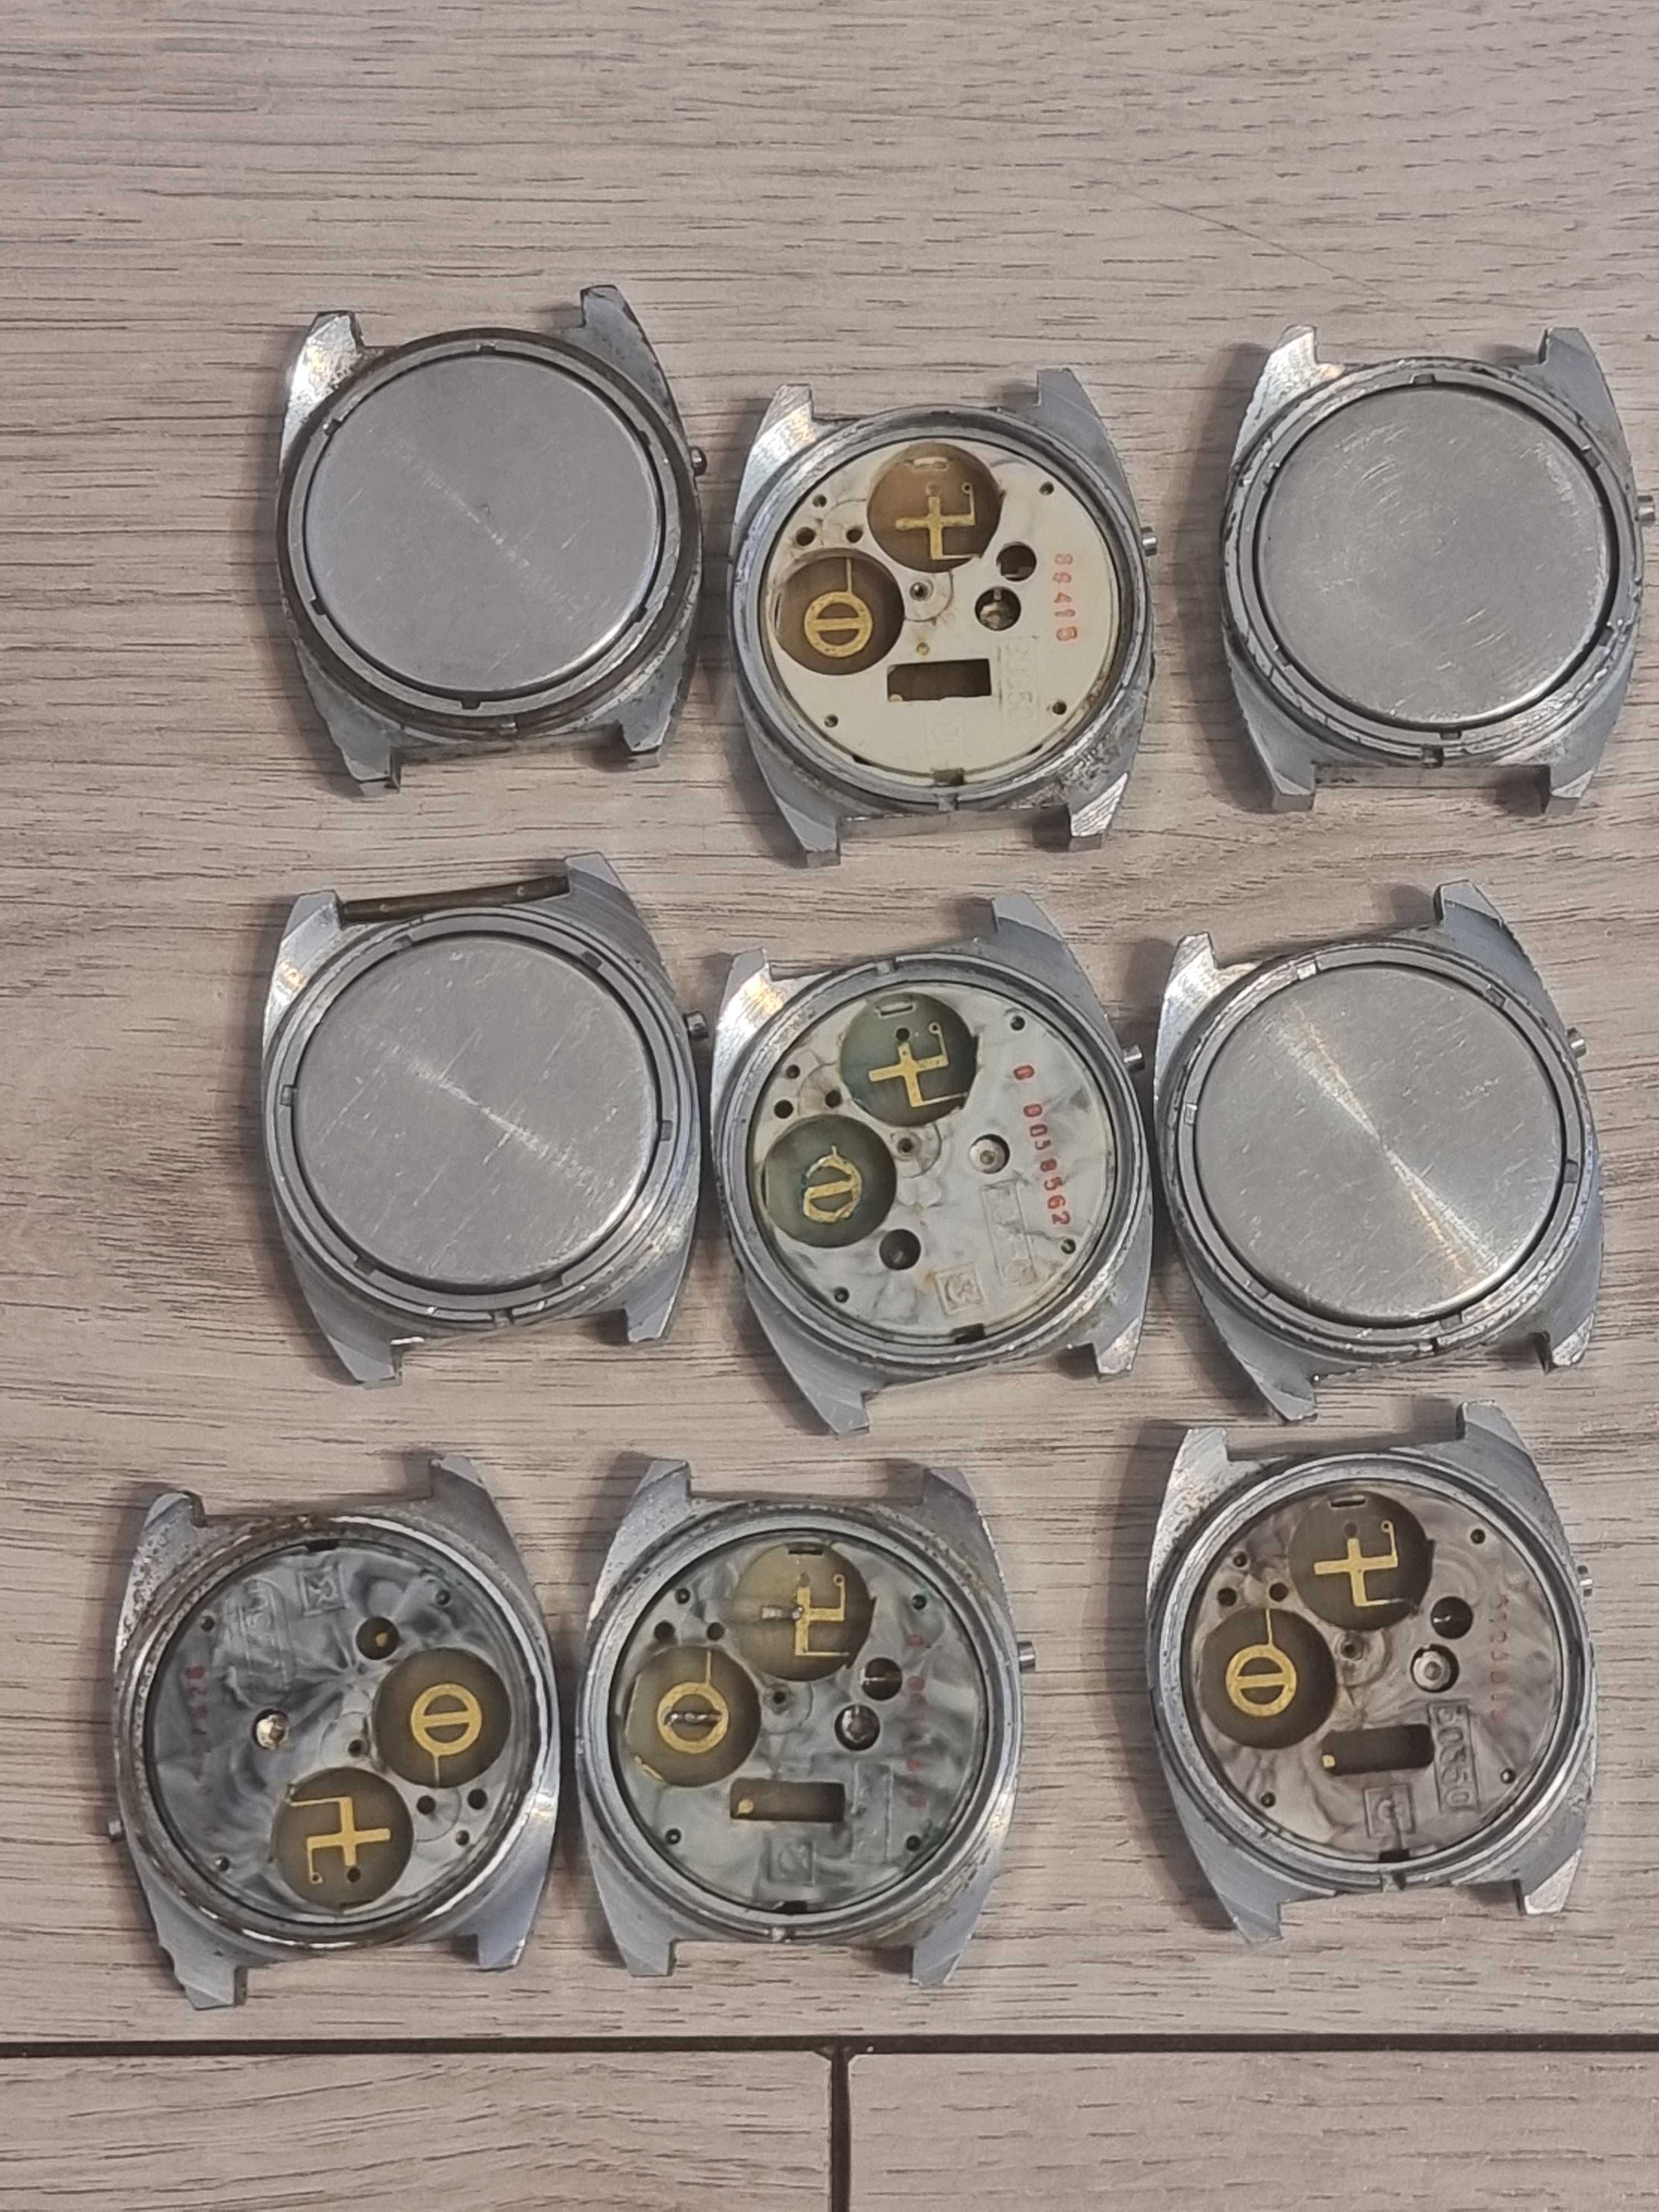 Zestaw 9 zegarków Elektronika 5 CCCP ZSRR